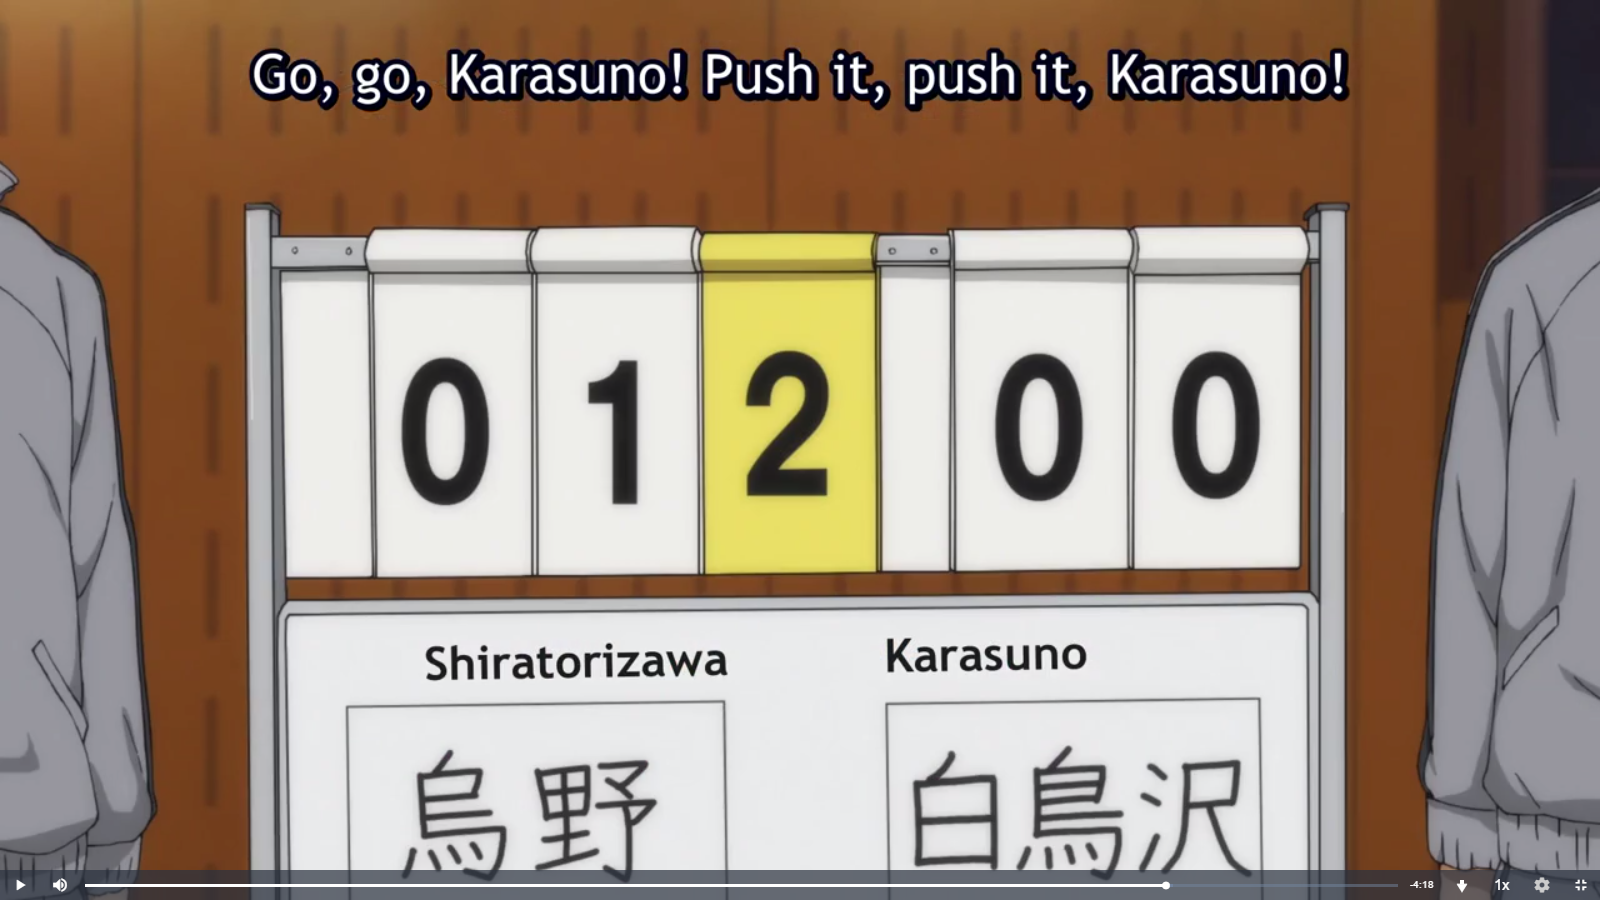 Spoilers] Haikyuu!!: Karasuno Koukou VS Shiratorizawa Gakuen Koukou -  Episode 4 discussion : r/anime